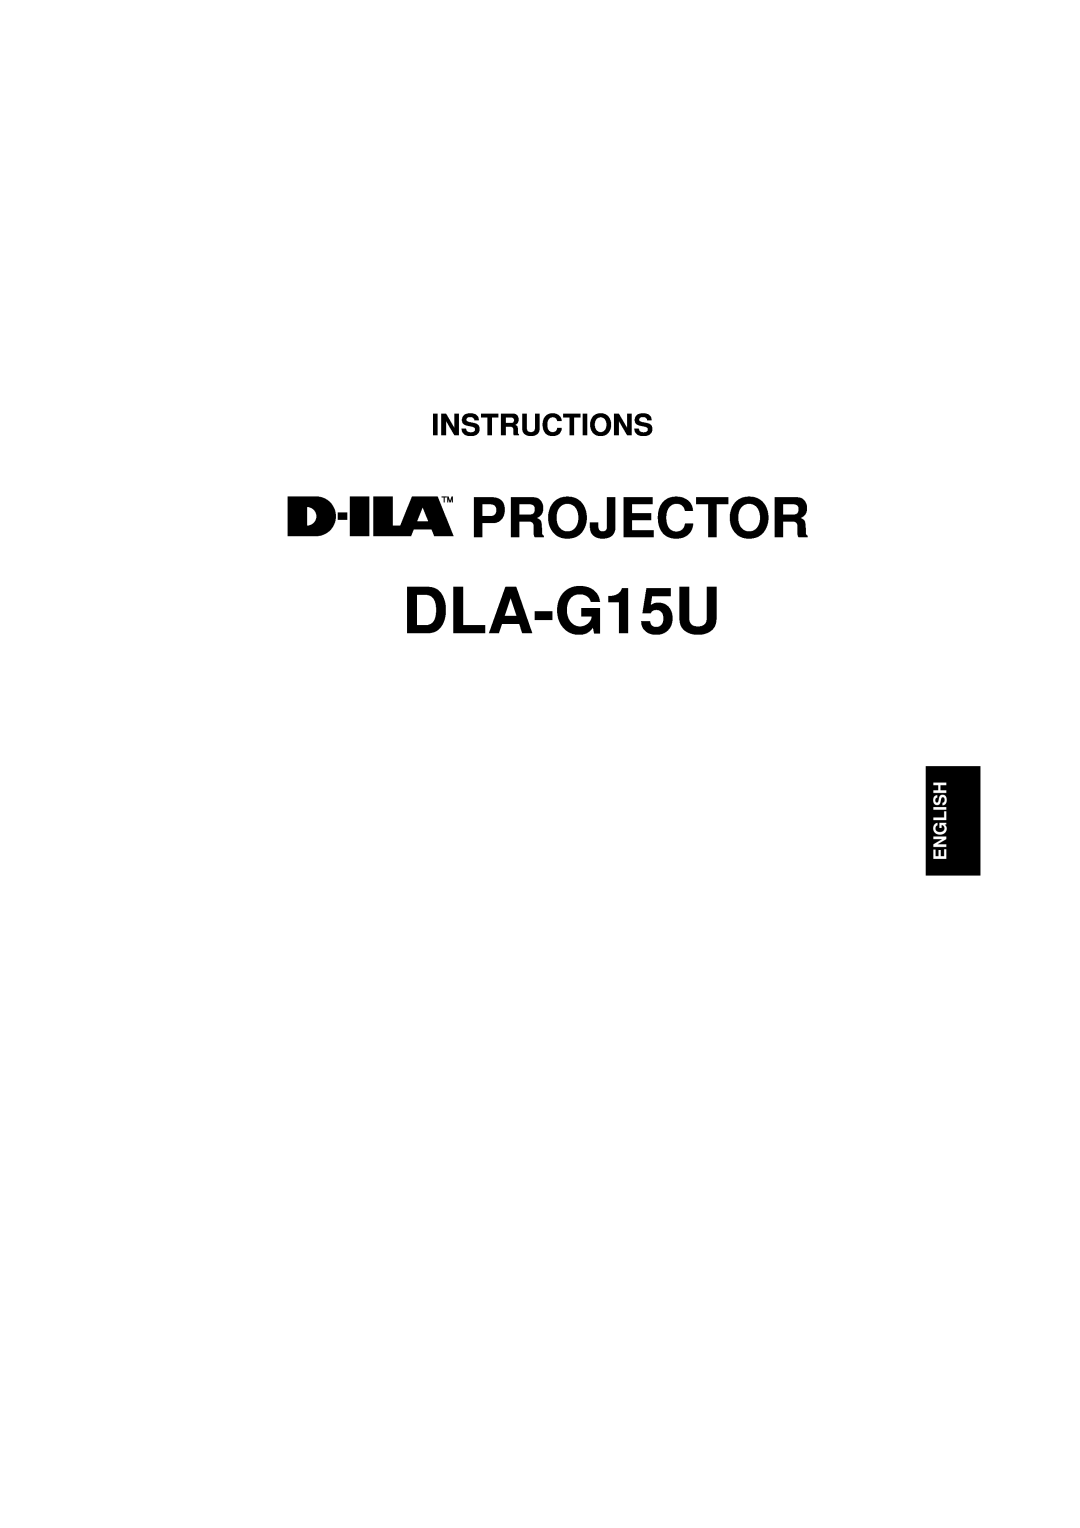 JVC DLA-G15U manual Projector, Instructions, English 